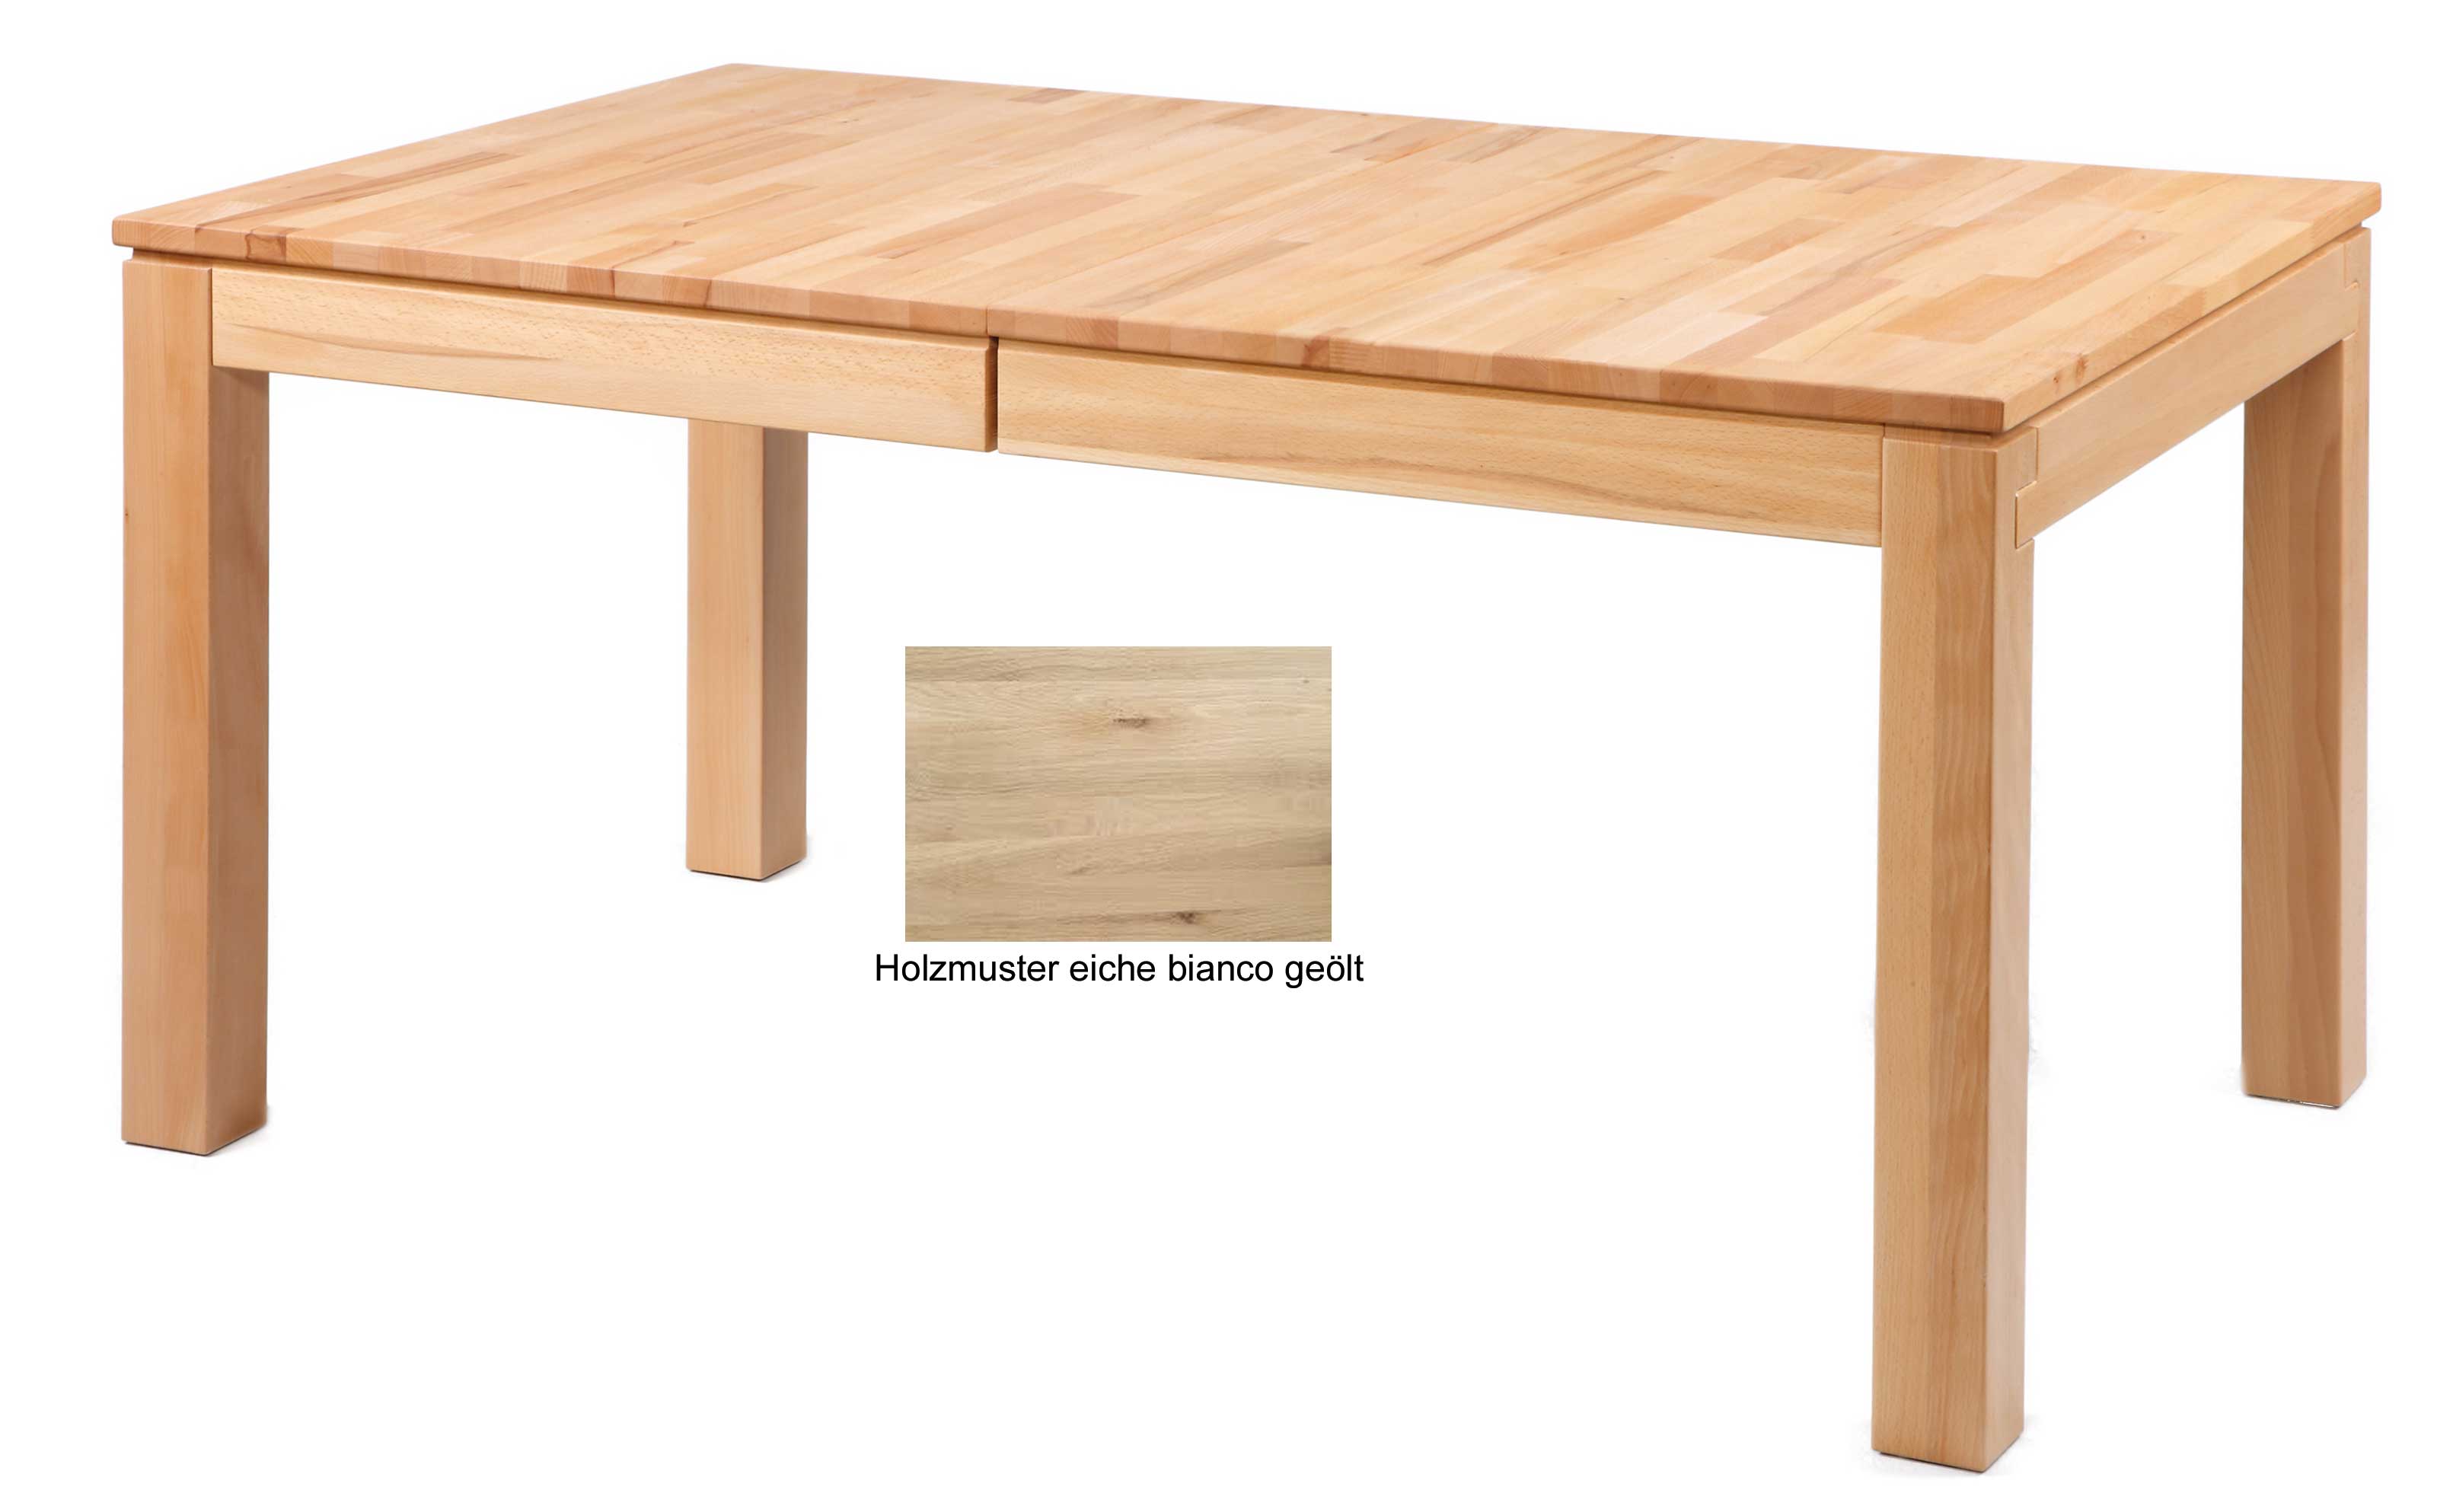 Standard Furniture Grado Holztisch eiche bianco ausziehbar